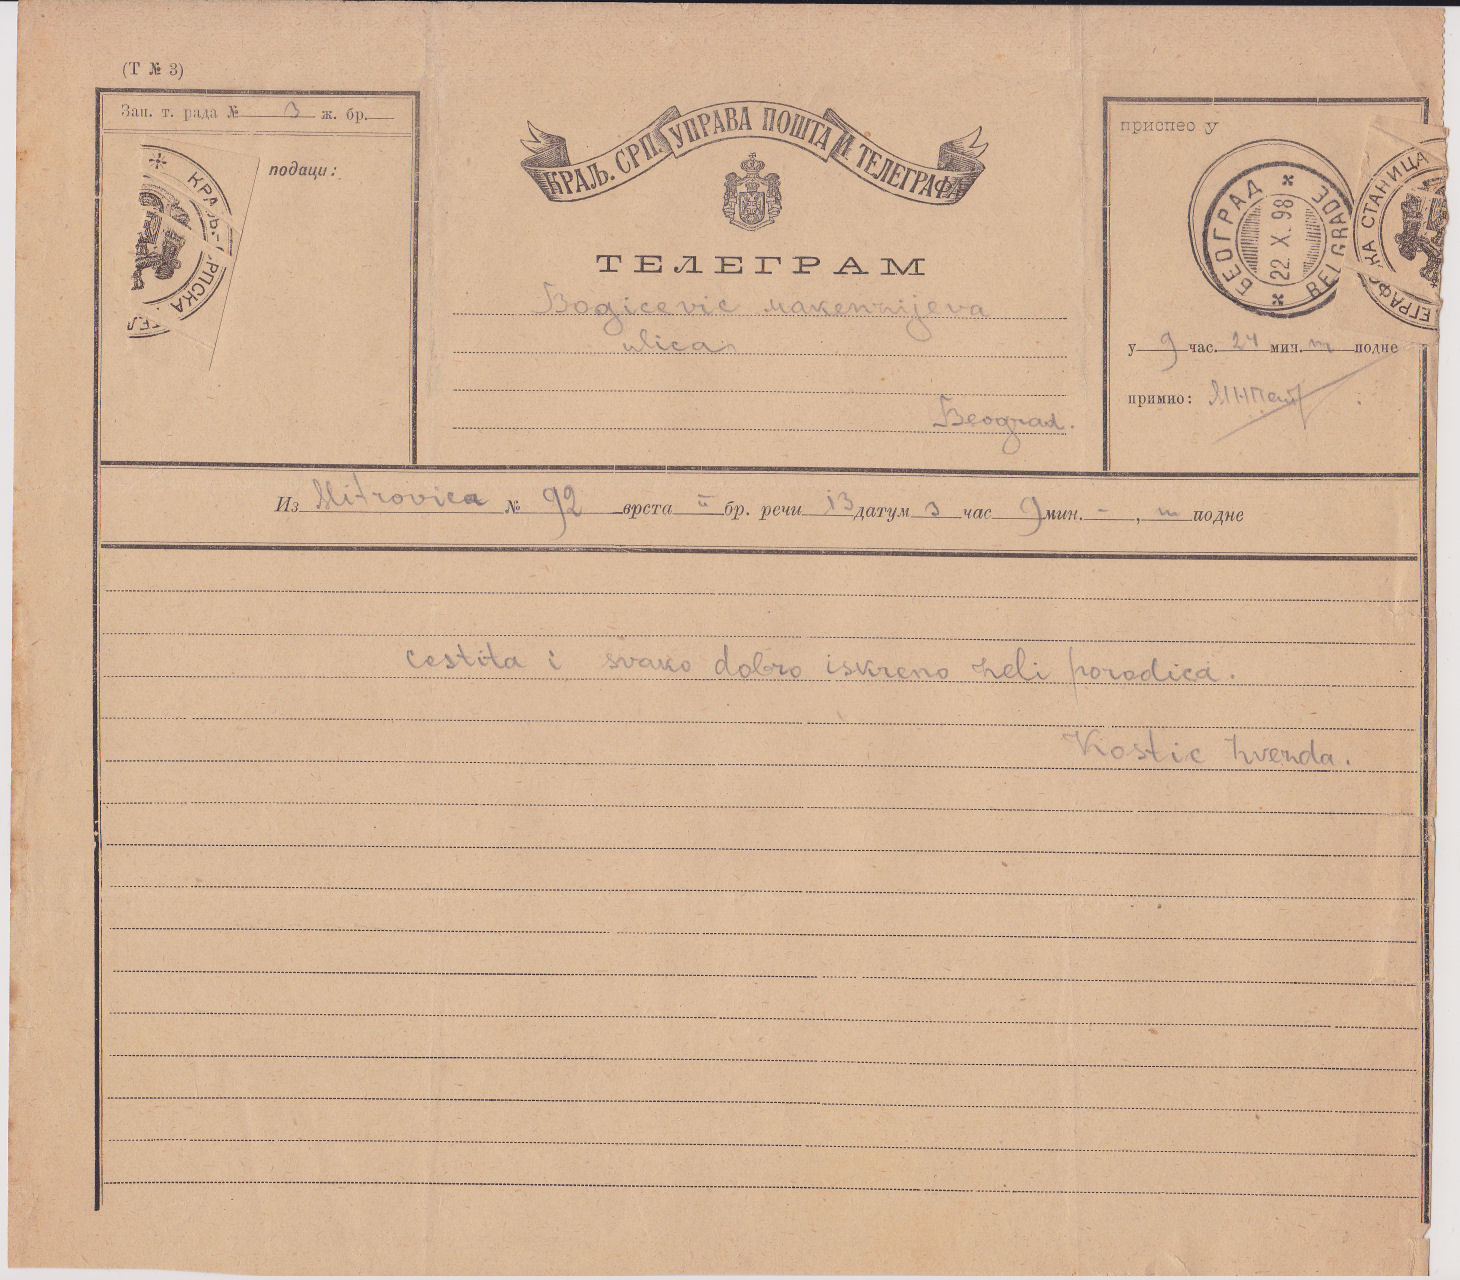 Serbia telegram of 1898